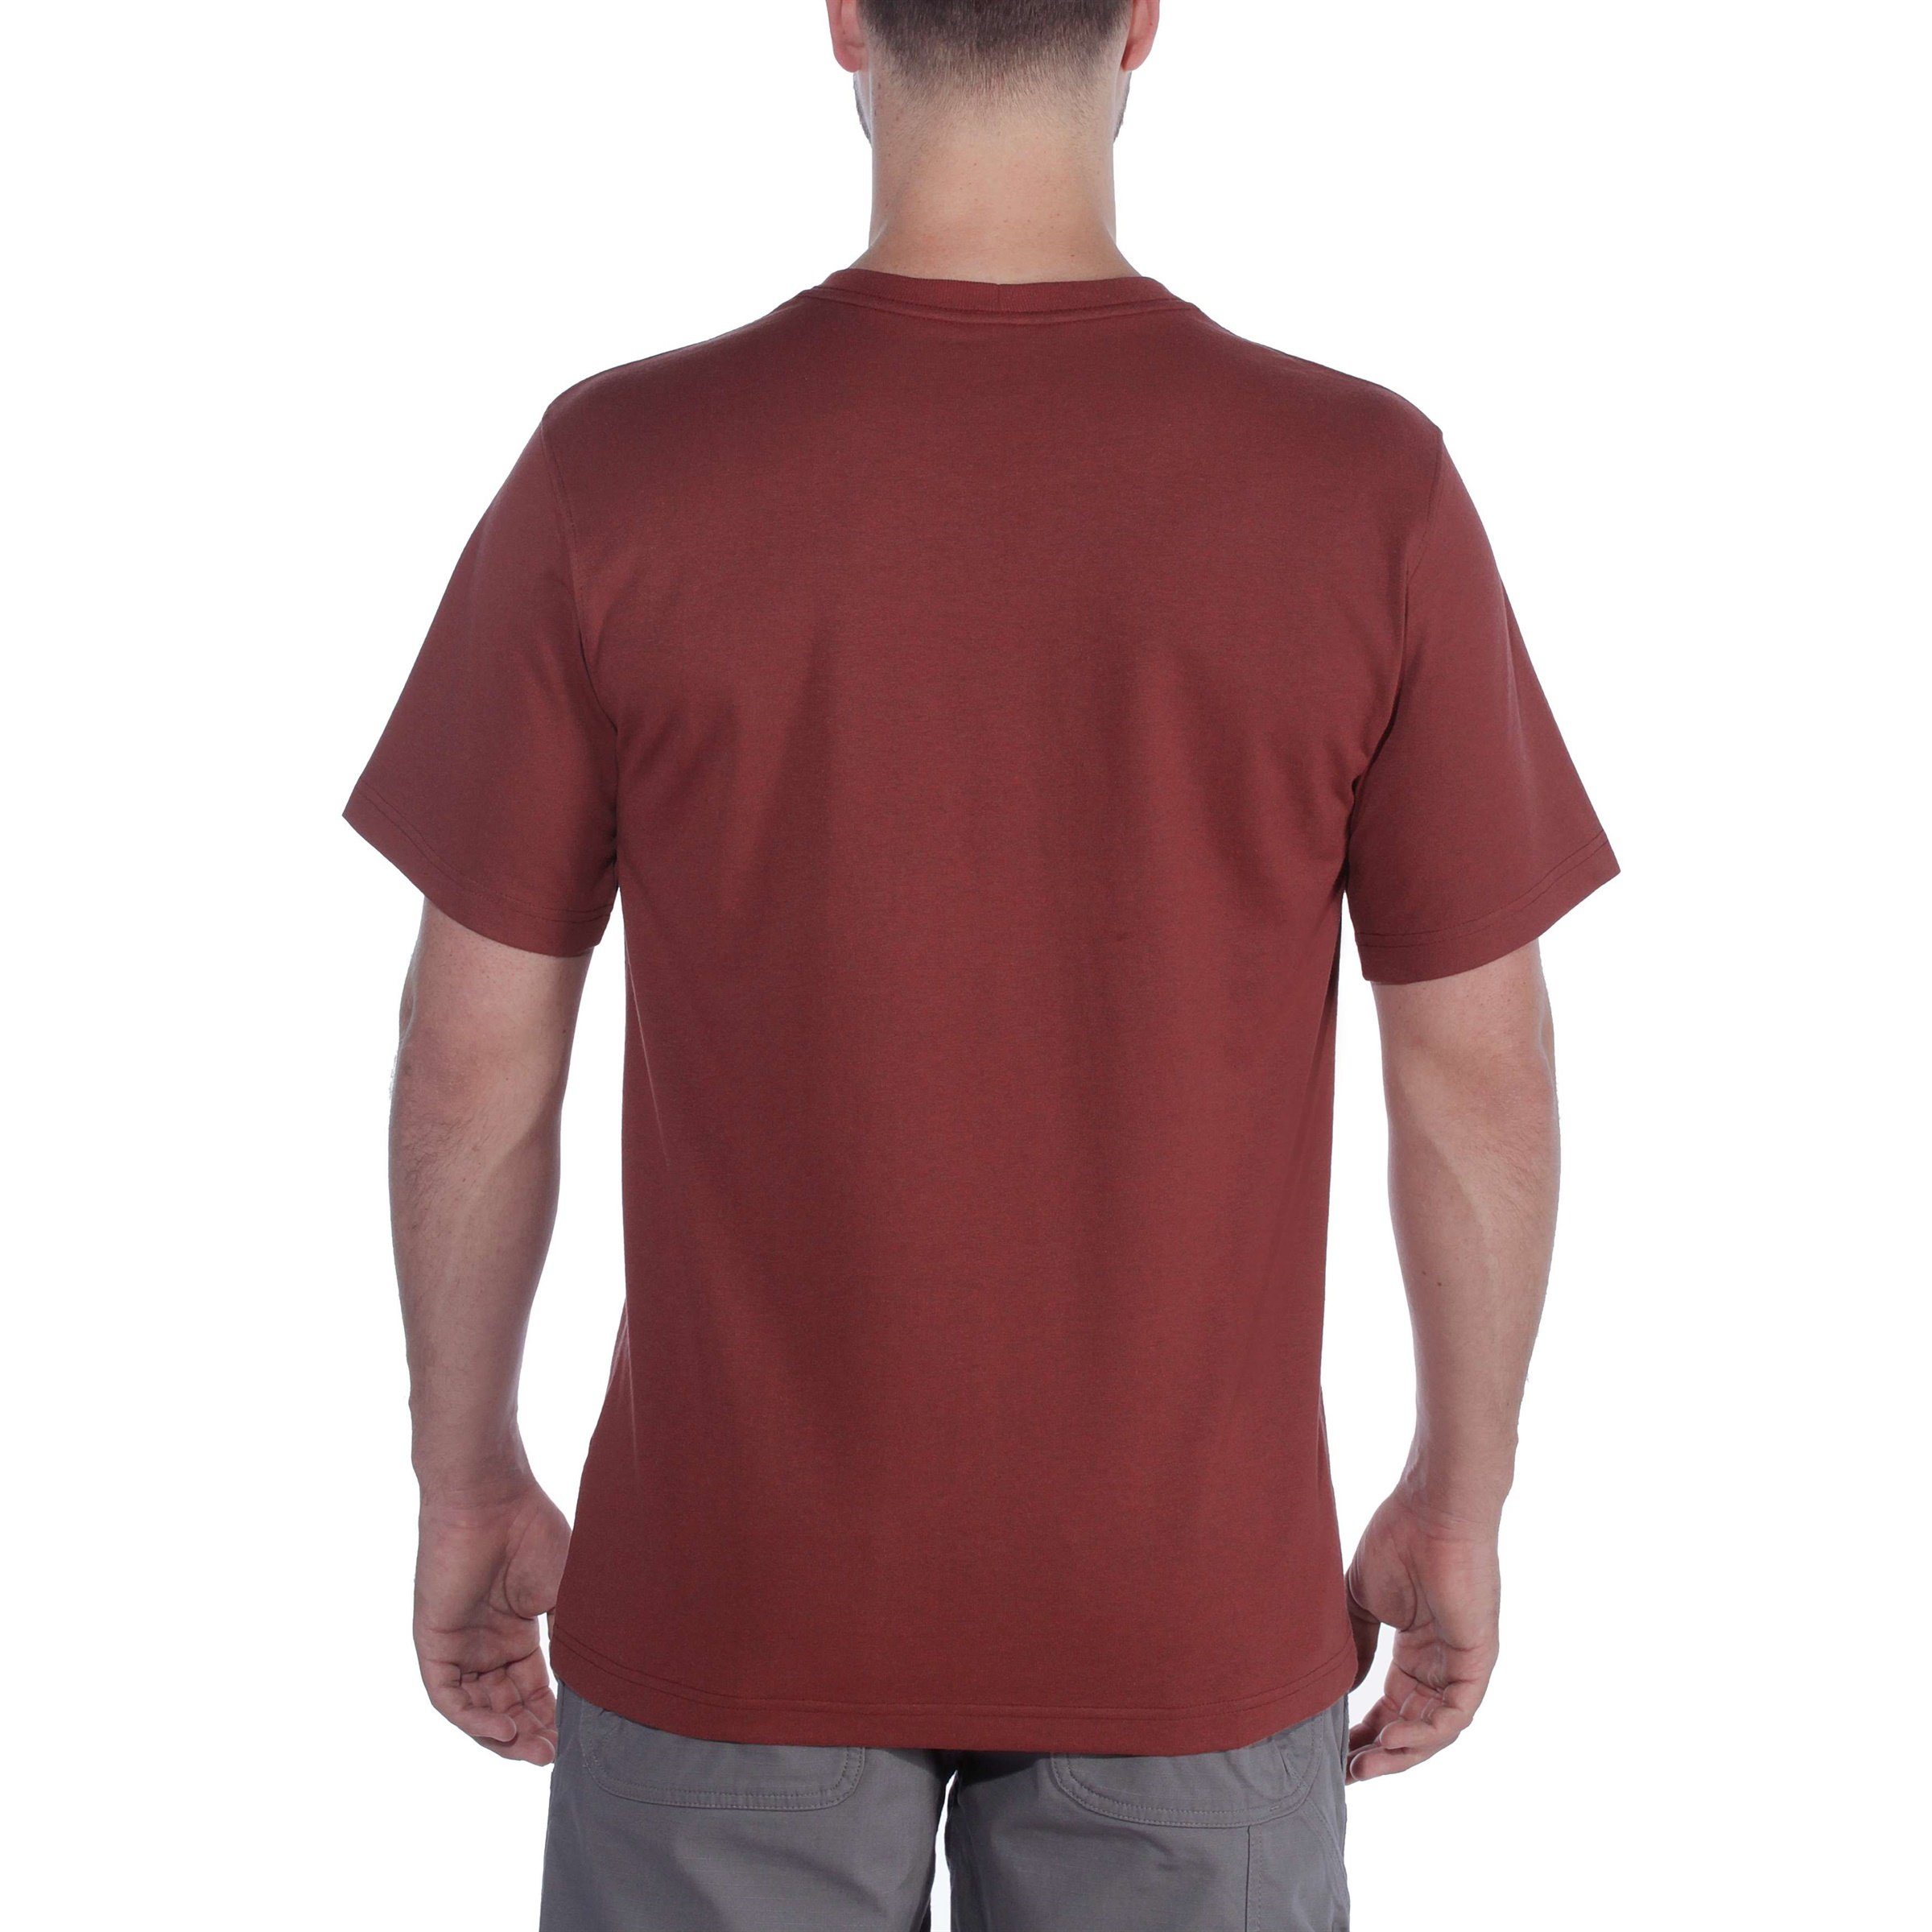 Carhartt Relaxed Herren T-Shirt Graphic Adult Fit Short-Sleeve Heavyweight navy Carhartt T-Shirt Logo